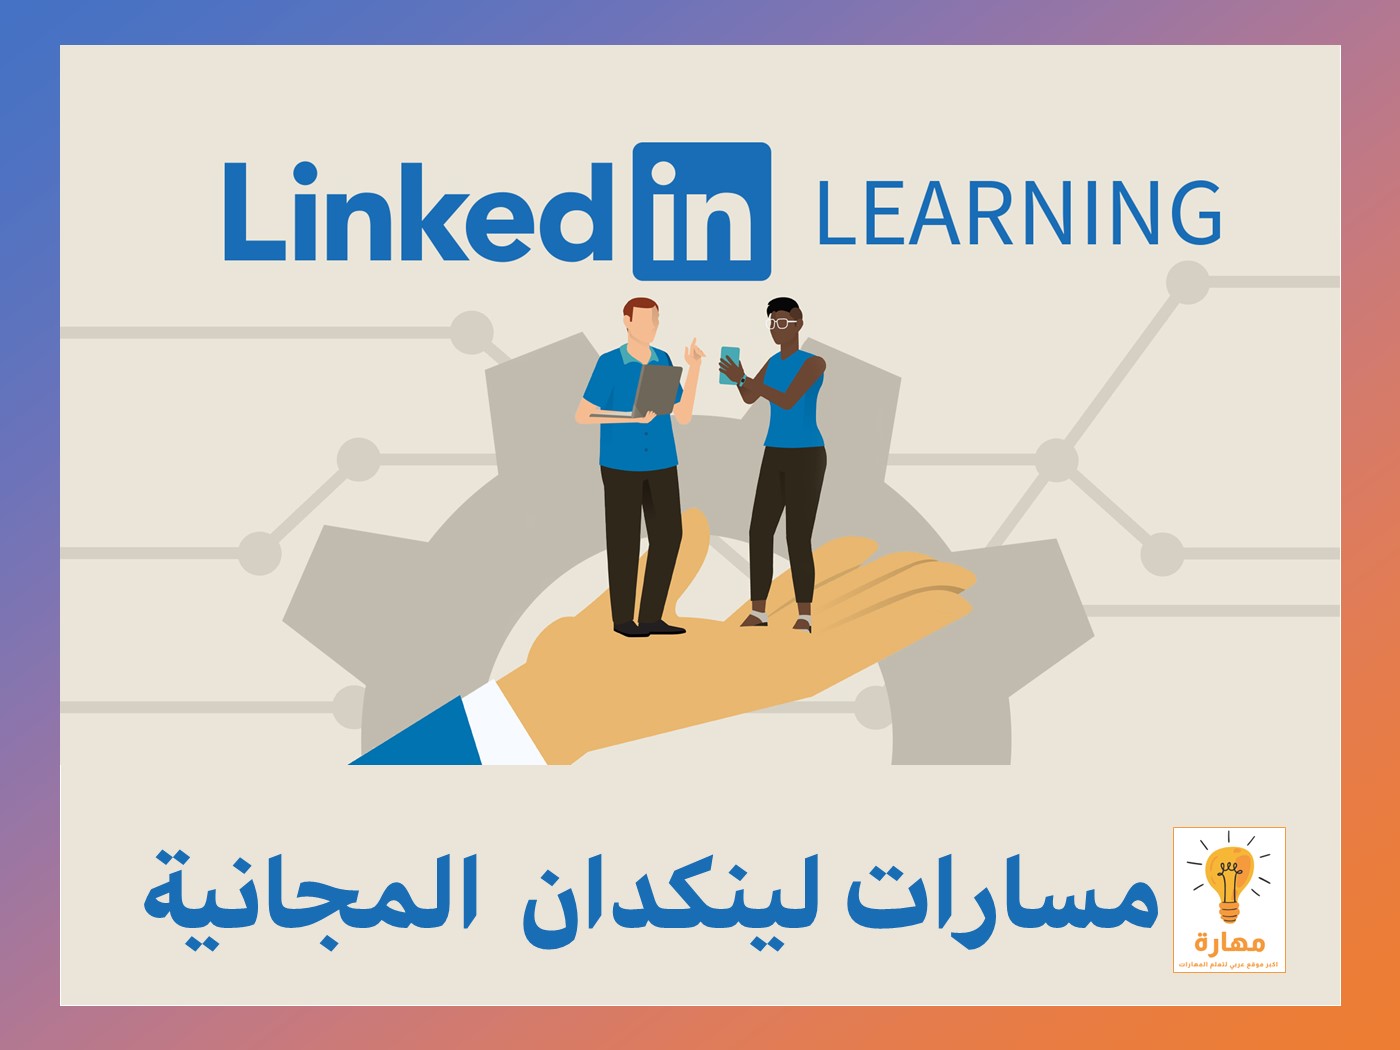 تعلم مهارات المستقبل مع مسارات LinkedIn المجانية